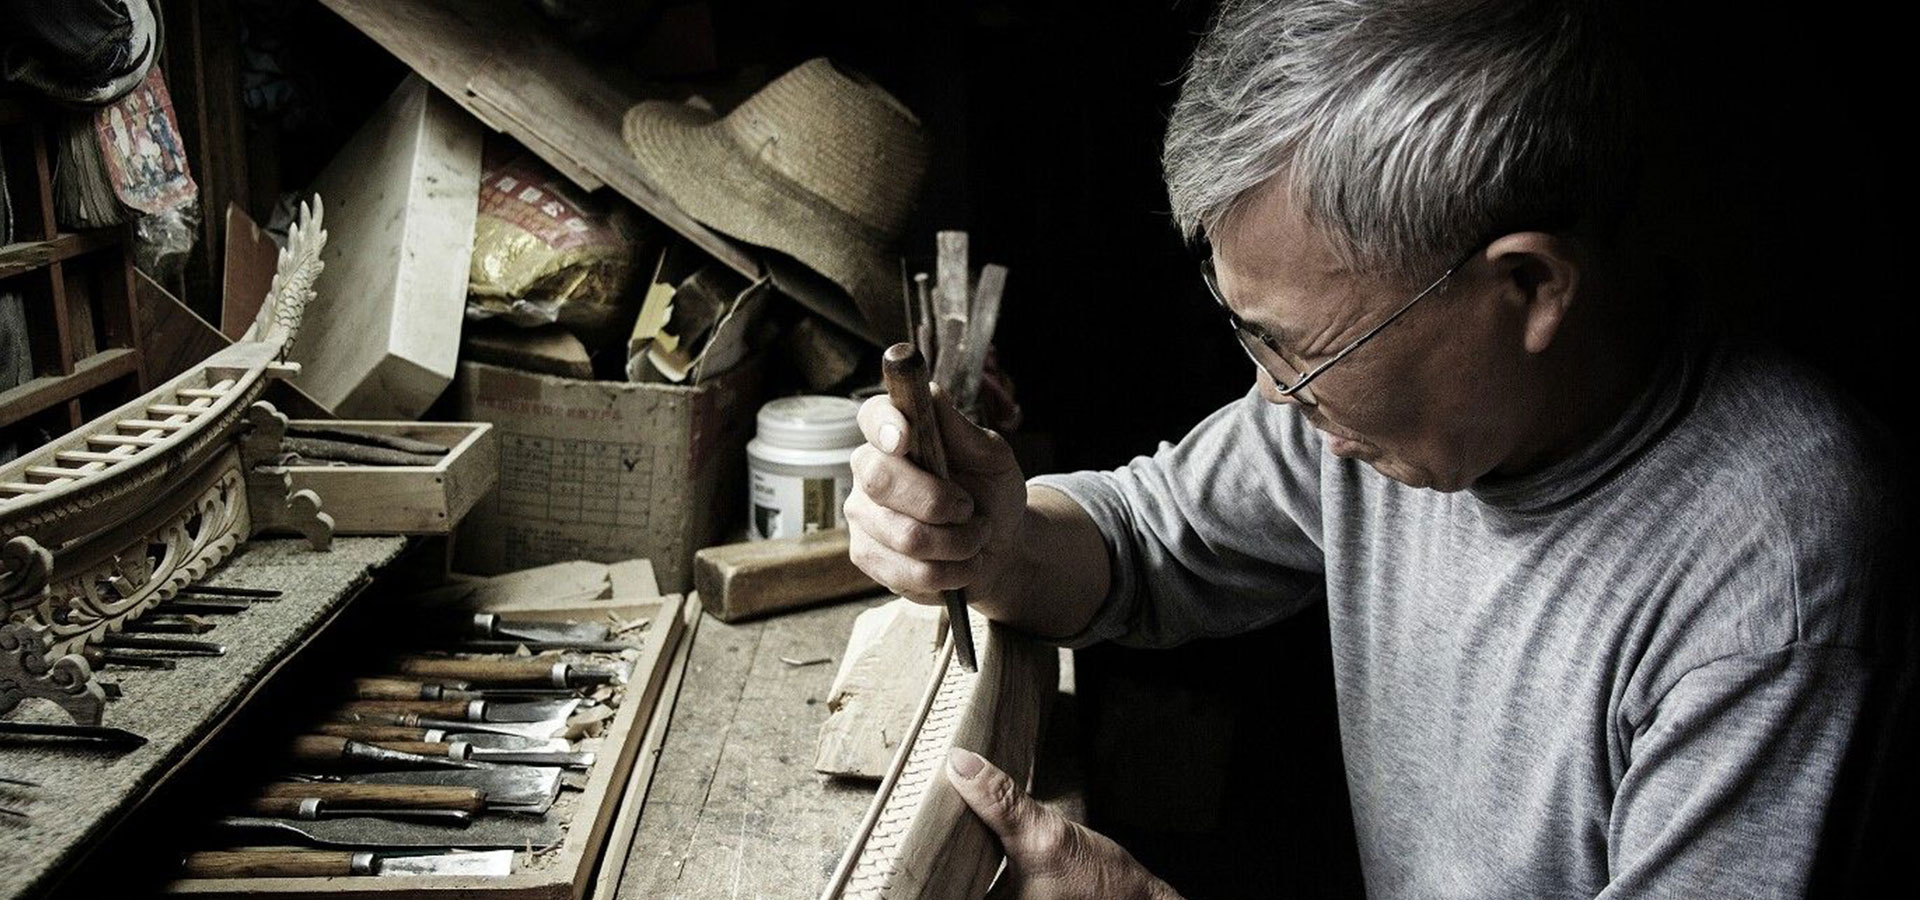 中国期待更多大国工匠 国外"工匠精神"如何炼成